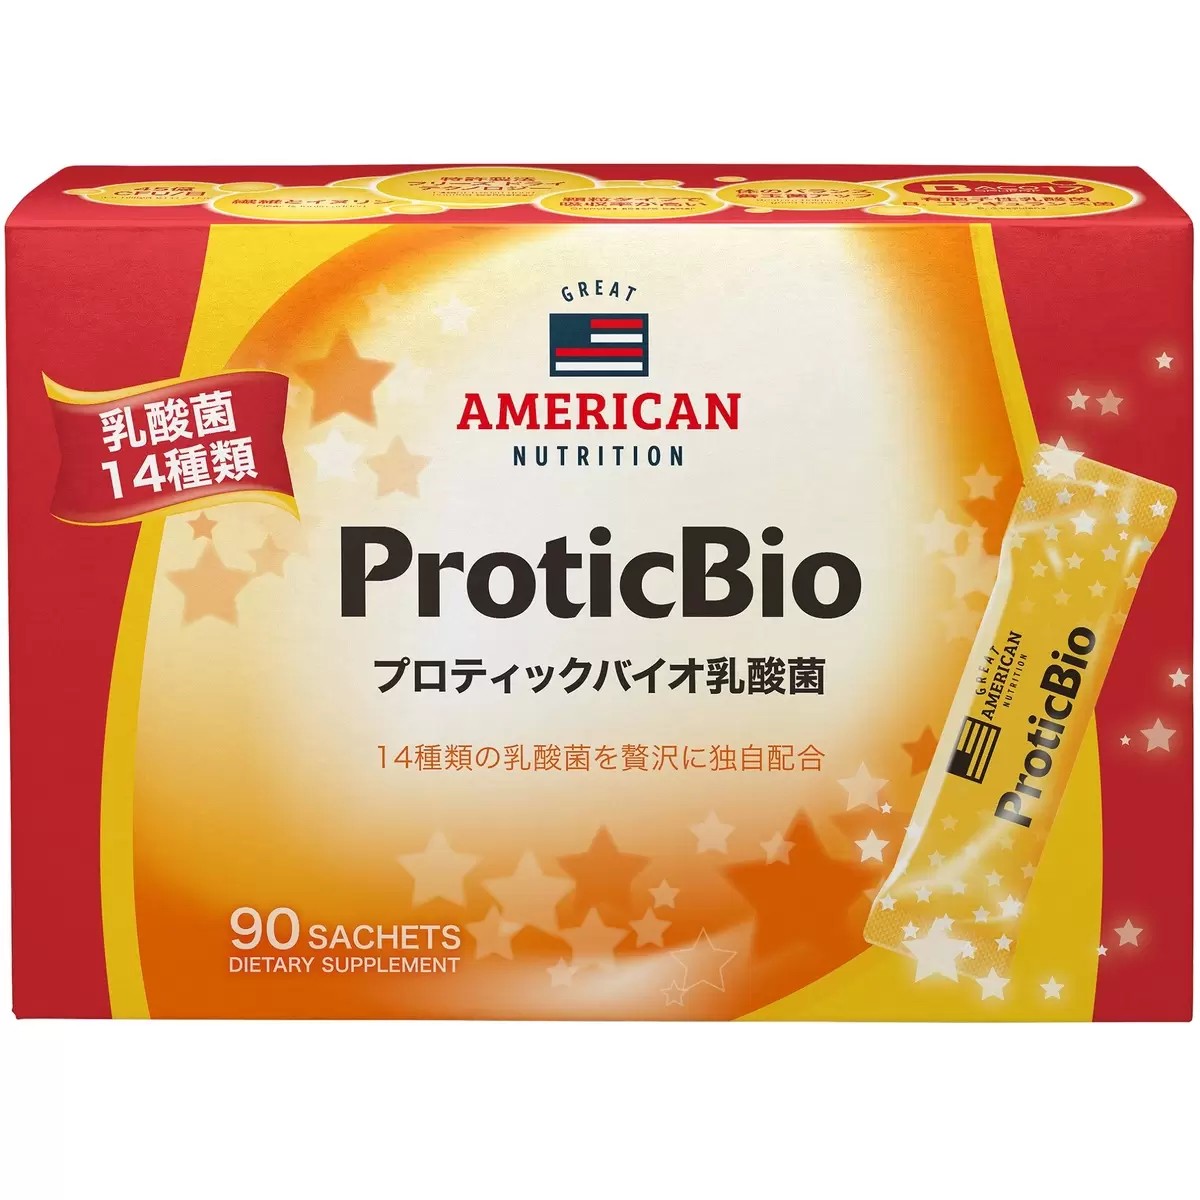 プロティックバイオ乳酸菌 3g 90包 ProticBio 14種類 乳酸菌 腸 顆粒タイプ 体内環境 台湾で人気 コストコ 12243